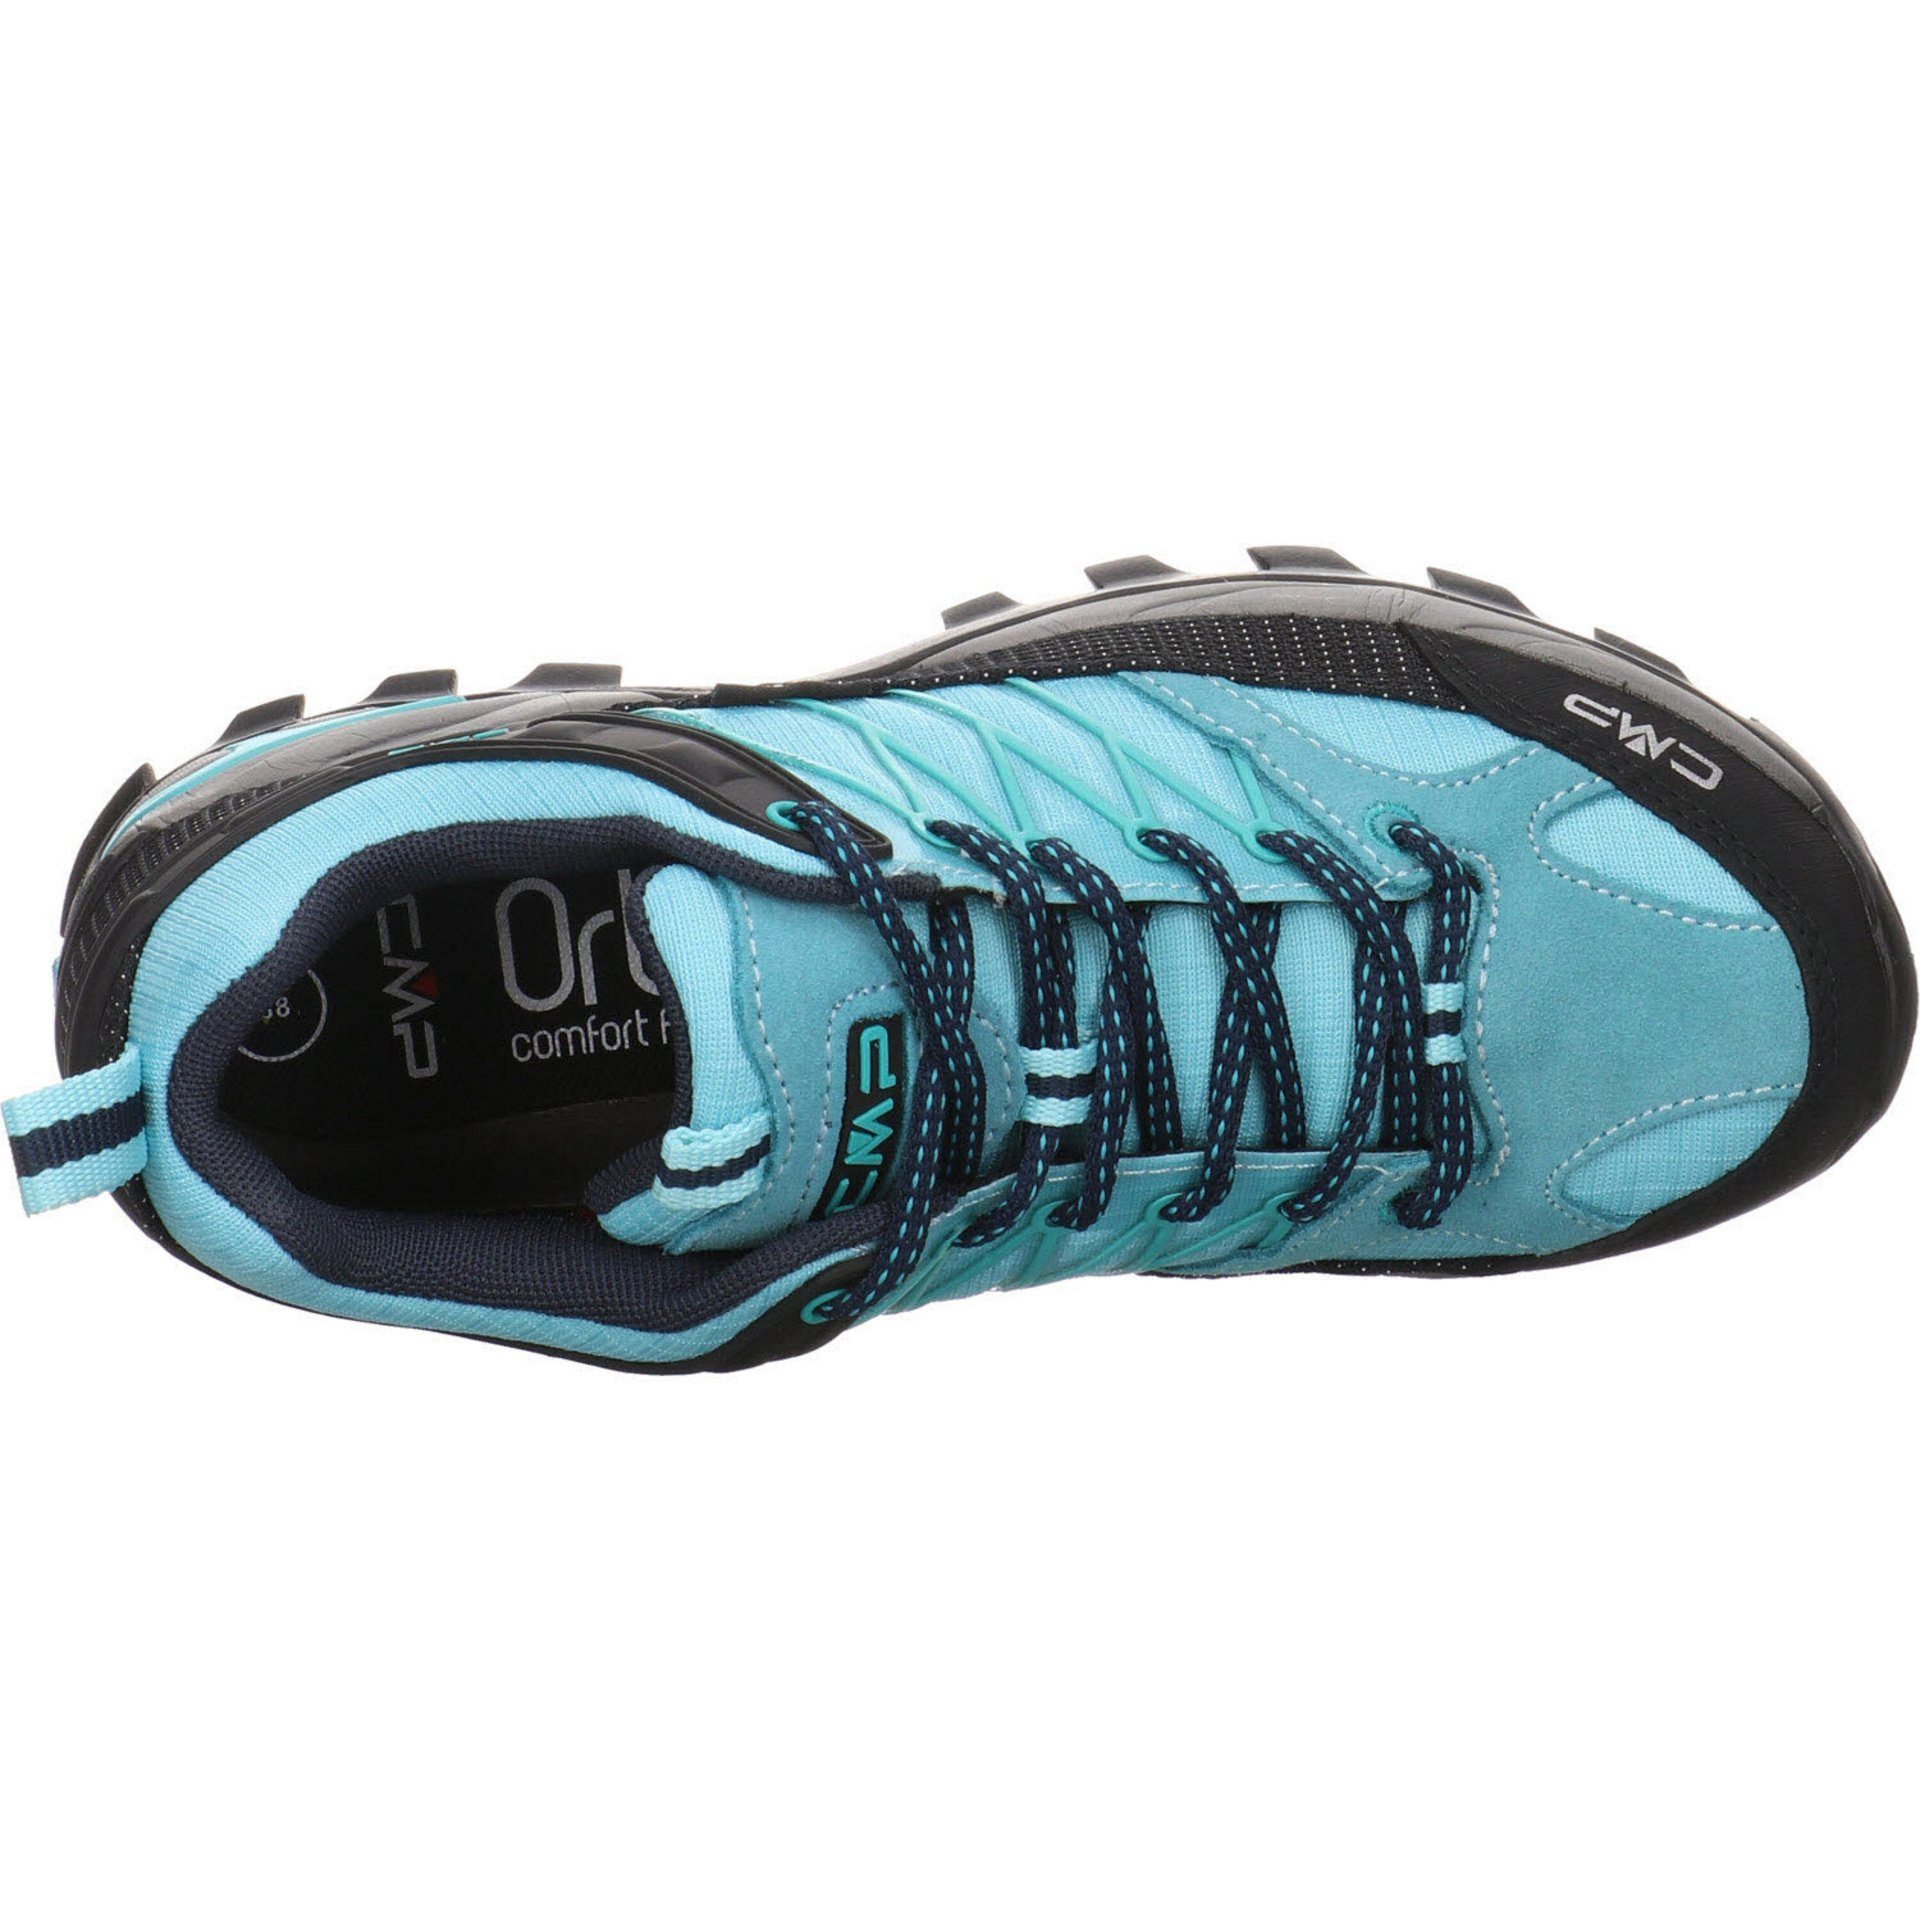 Outdoorschuh Outdoor kombiniert Rigel Damen Outdoorschuh blau mit Schuhe Synthetikkombination CMP Low